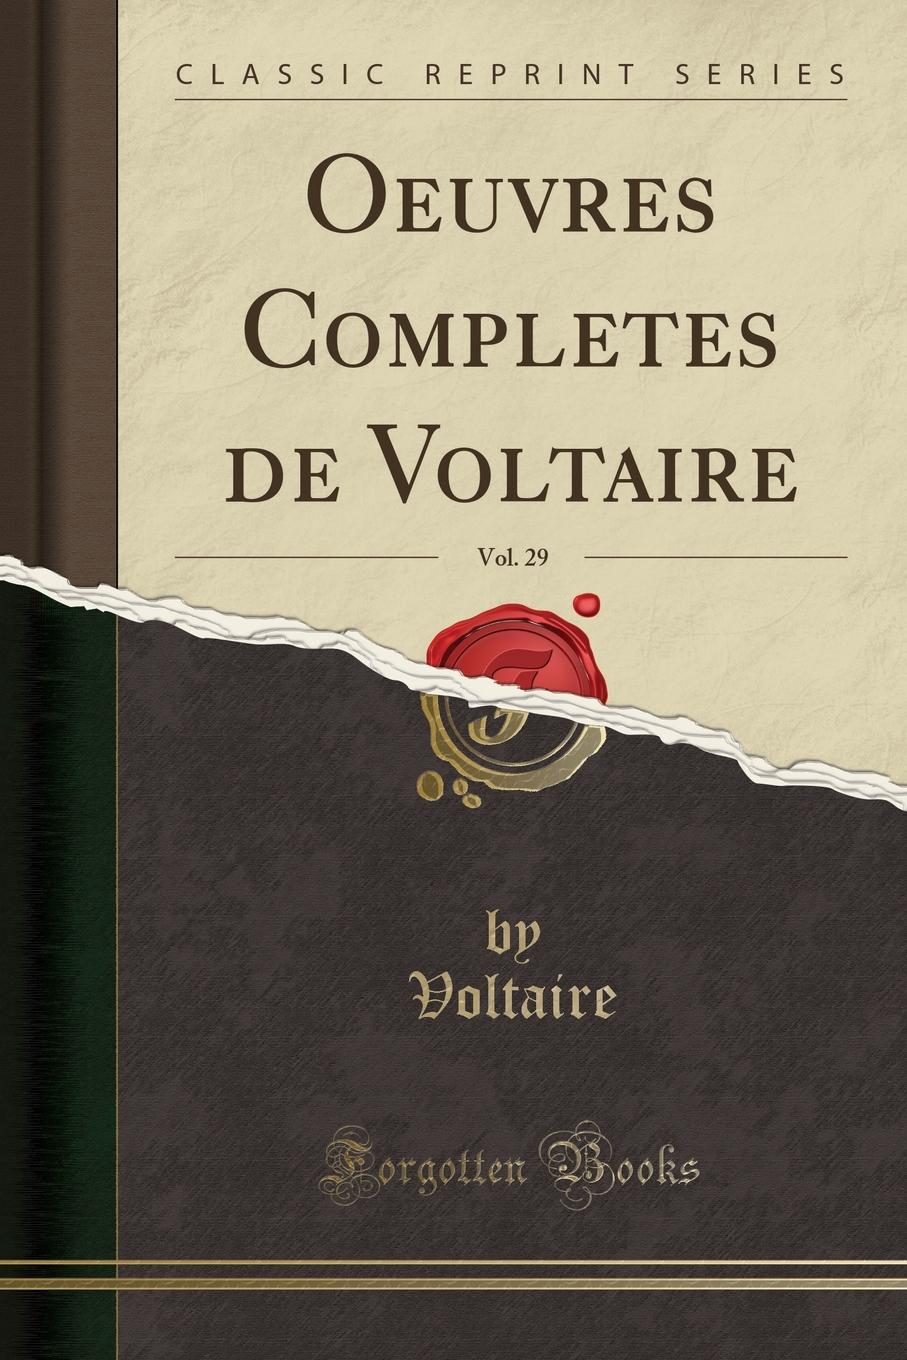 Voltaire Voltaire Oeuvres Completes de Voltaire, Vol. 29 (Classic Reprint)